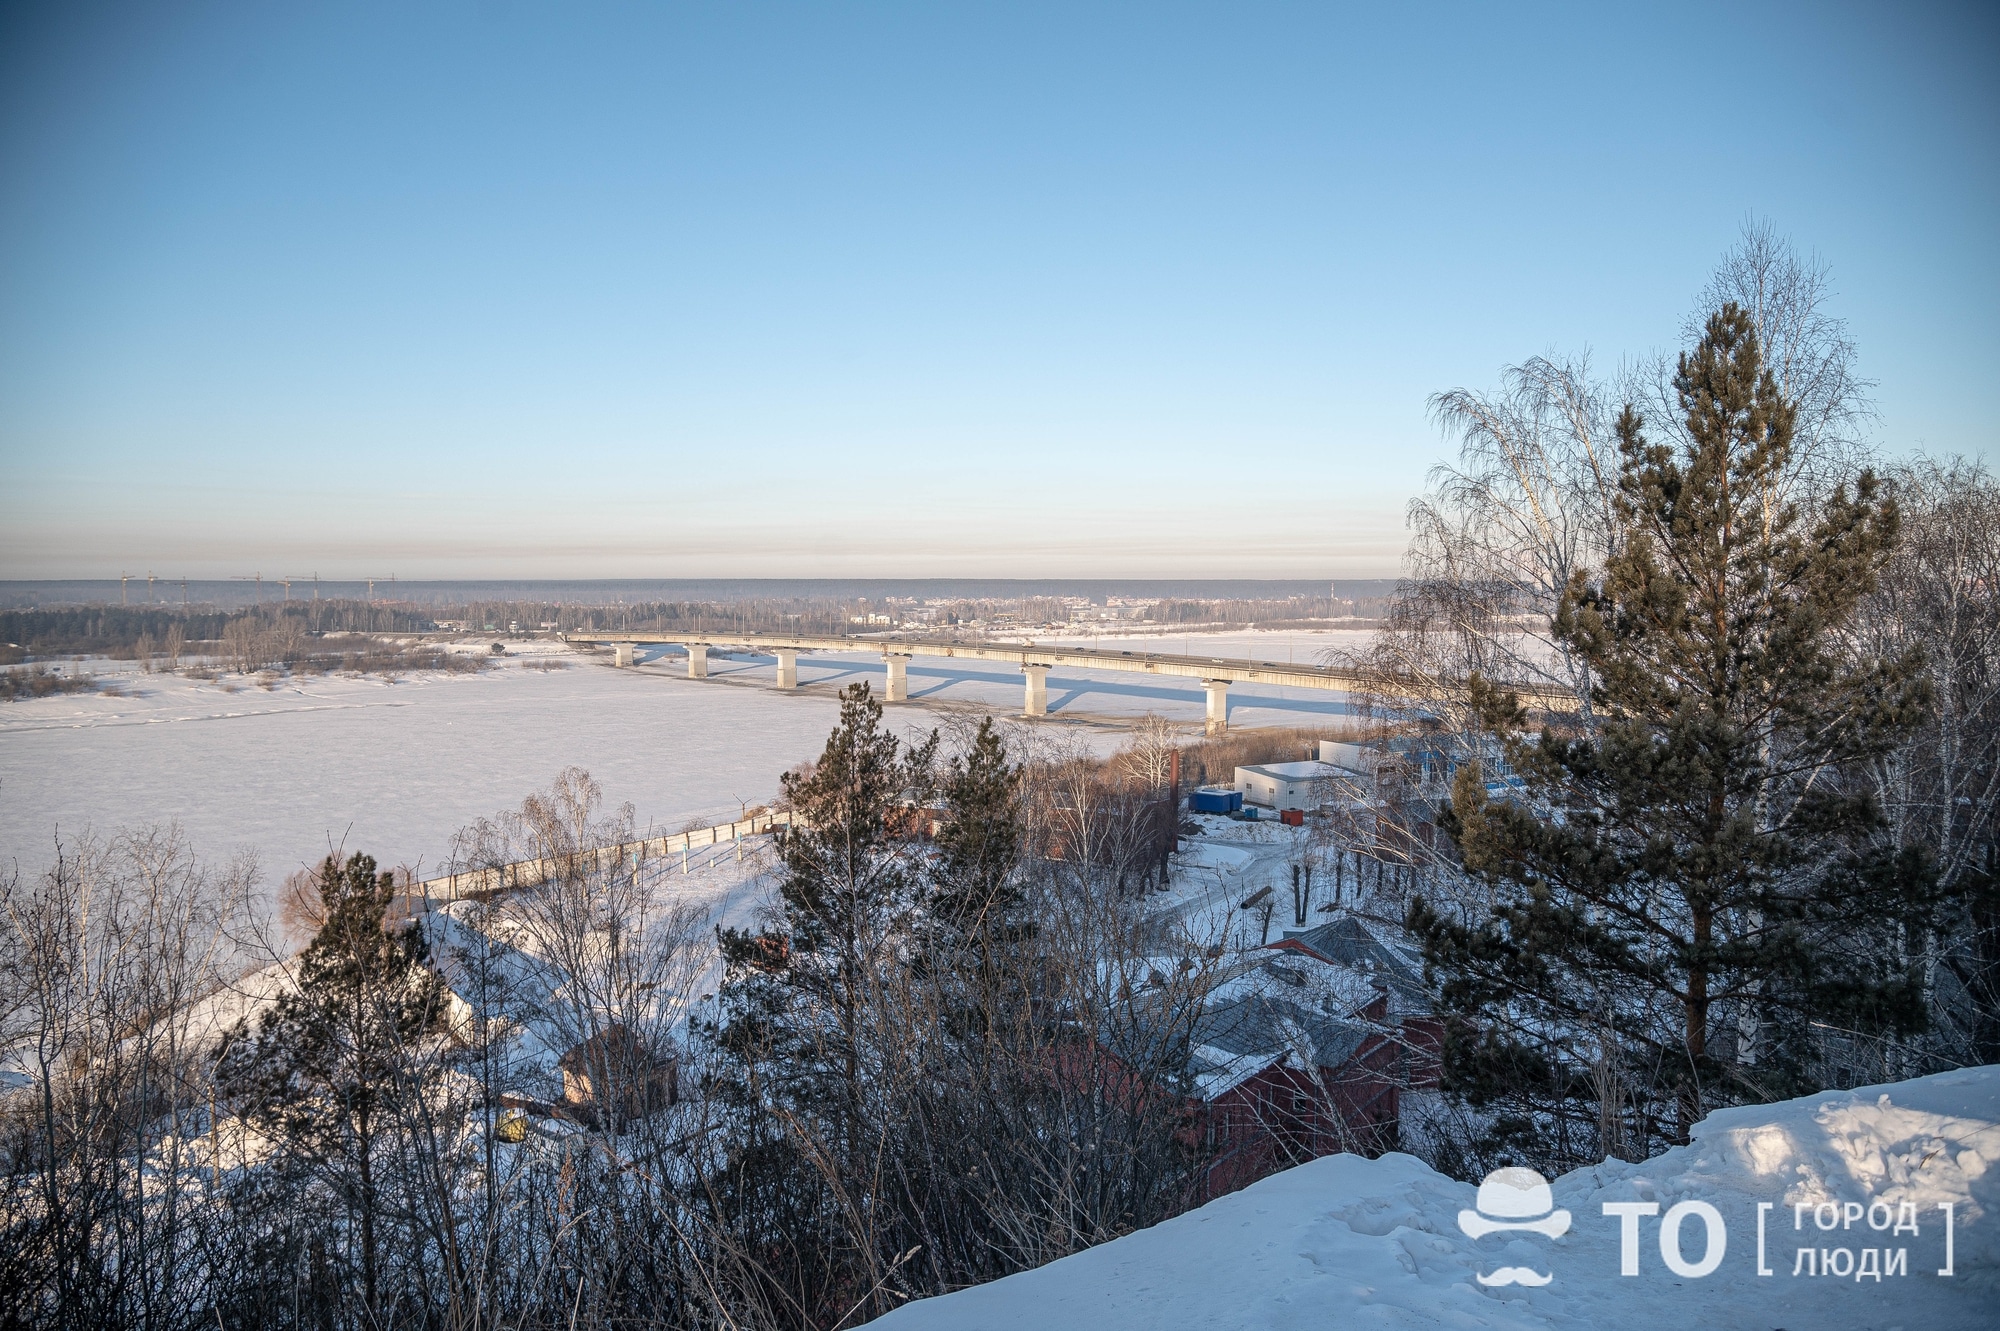 Томские новости, мэр мост Лигачев присвоить имя Коммунальному мосту Томска могут присвоить имя Егора Лигачева